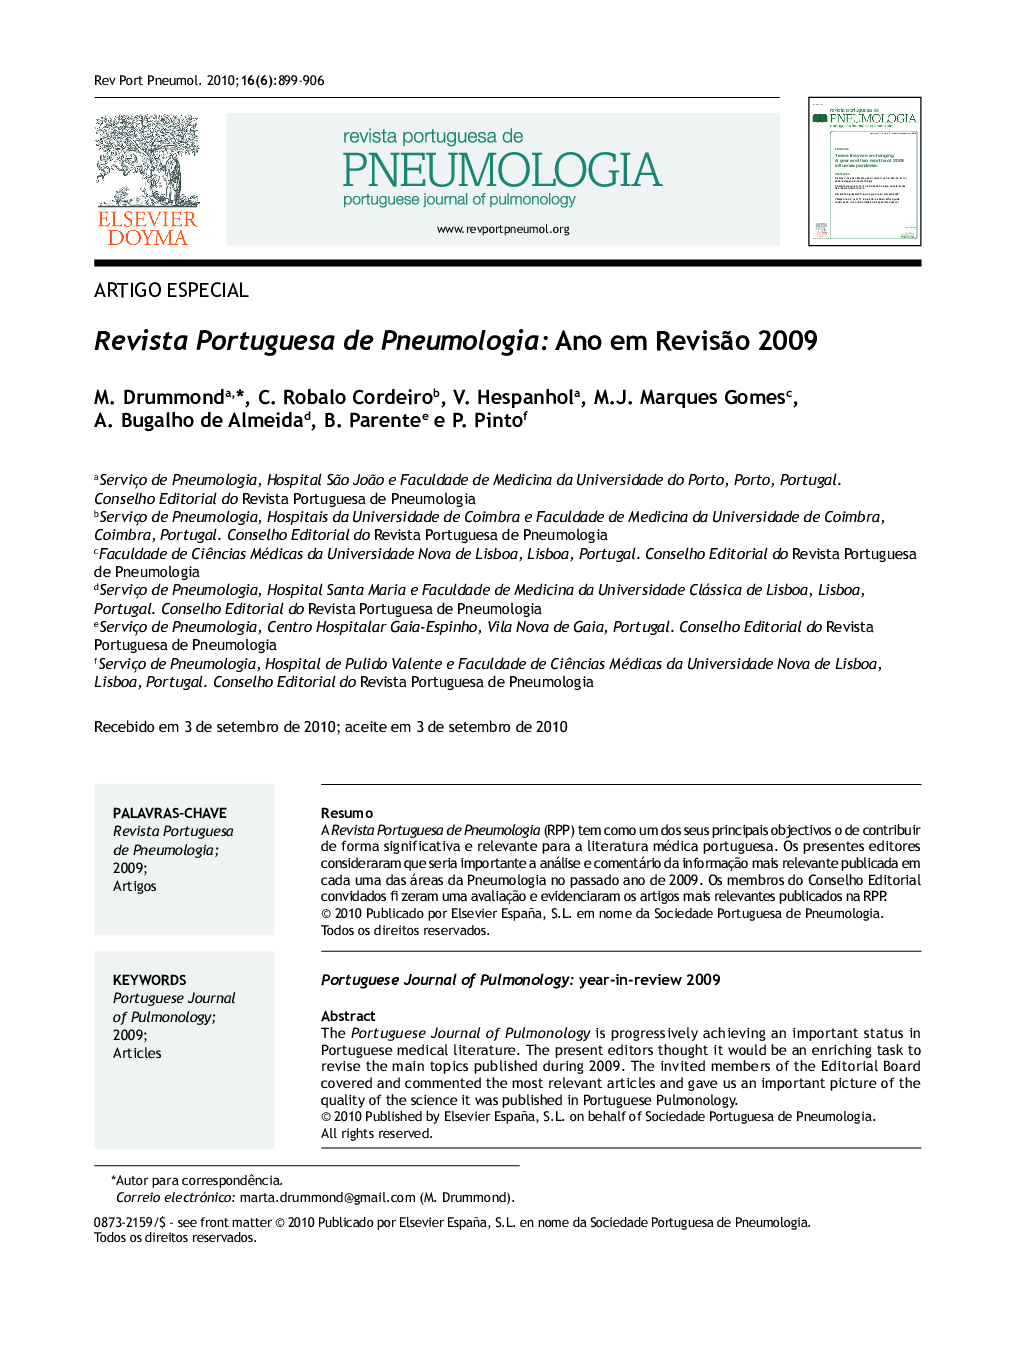 Revista Portuguesa de Pneumologia: Ano em Revisão 2009